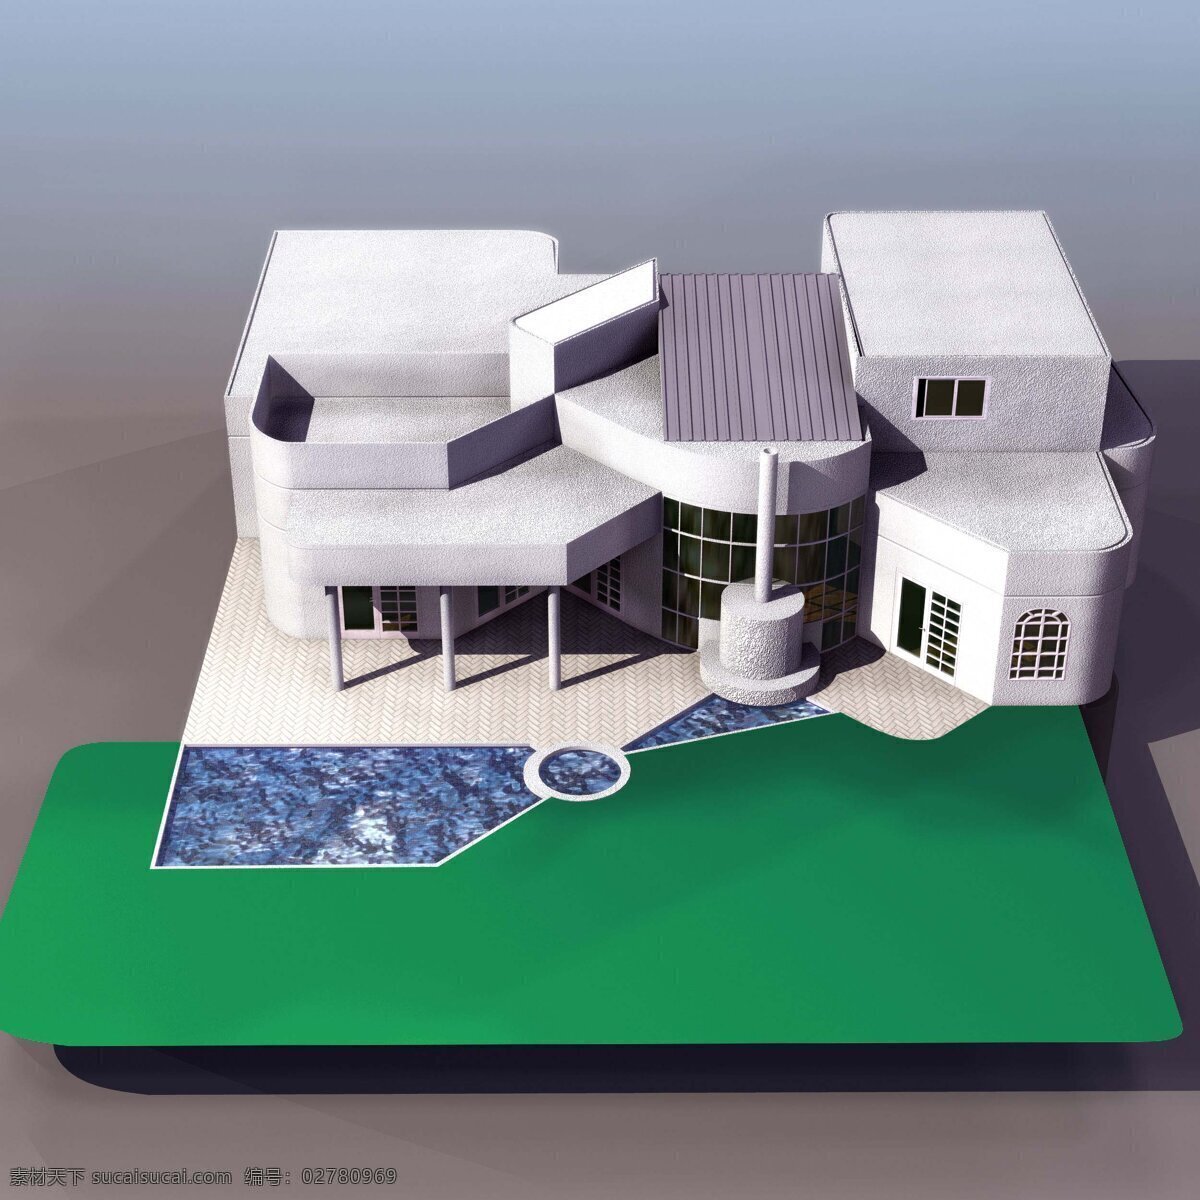 高精 致 小区 别墅 室外建筑 小区别墅 3d模型素材 建筑模型